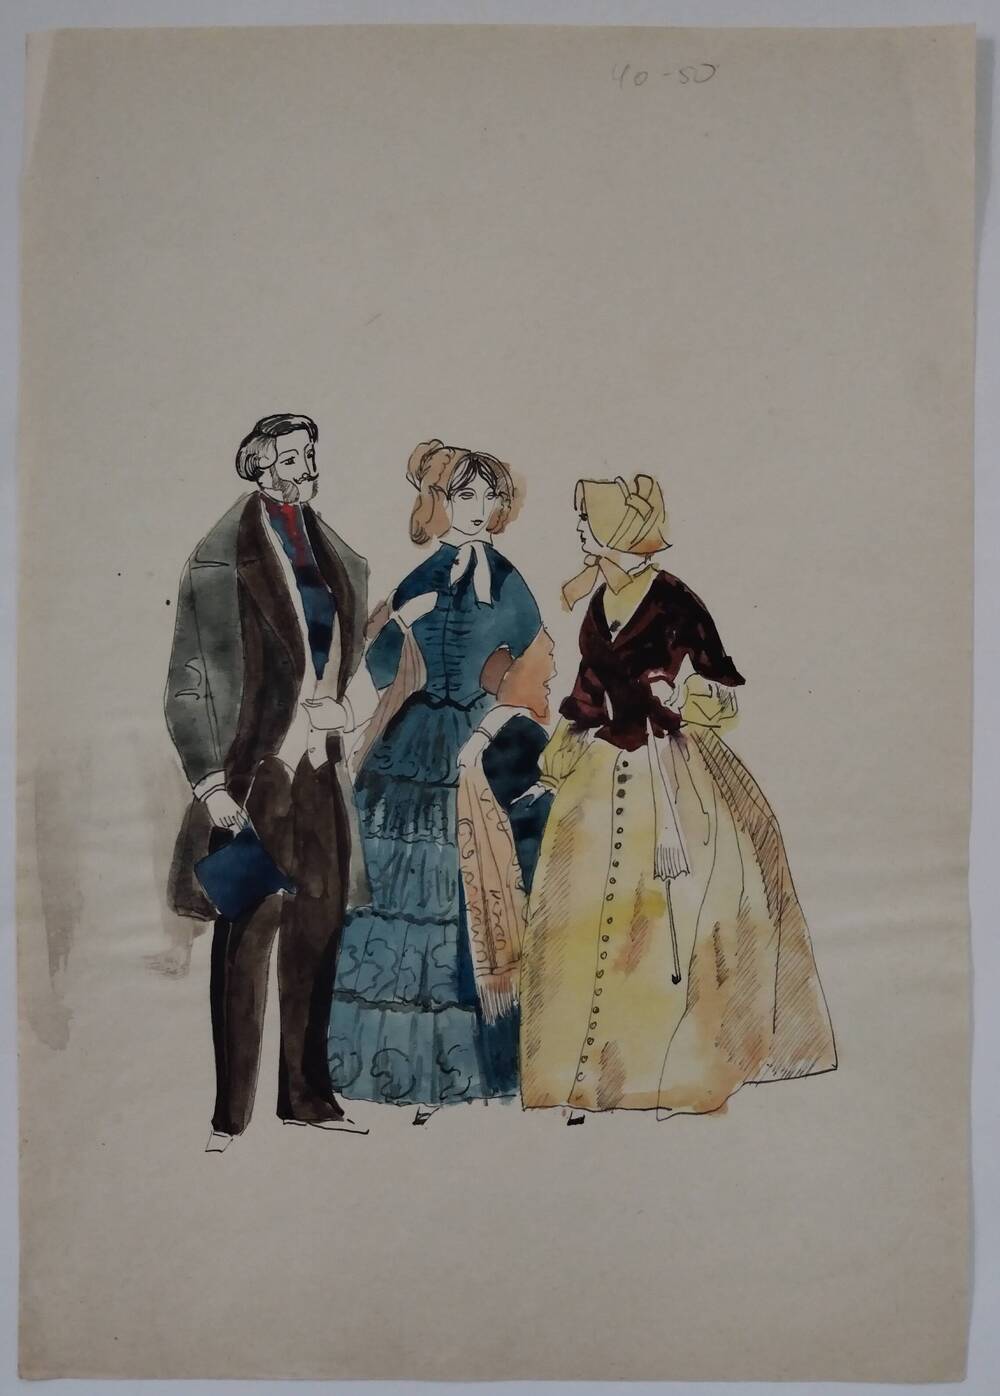 Чернышова Г. А. Эскиз с изображением двух дам и джентльмена в костюмах 50х -60-х гг. 19 в. Мужчина с цилиндром в руке, одна из дам в накинутой шали.